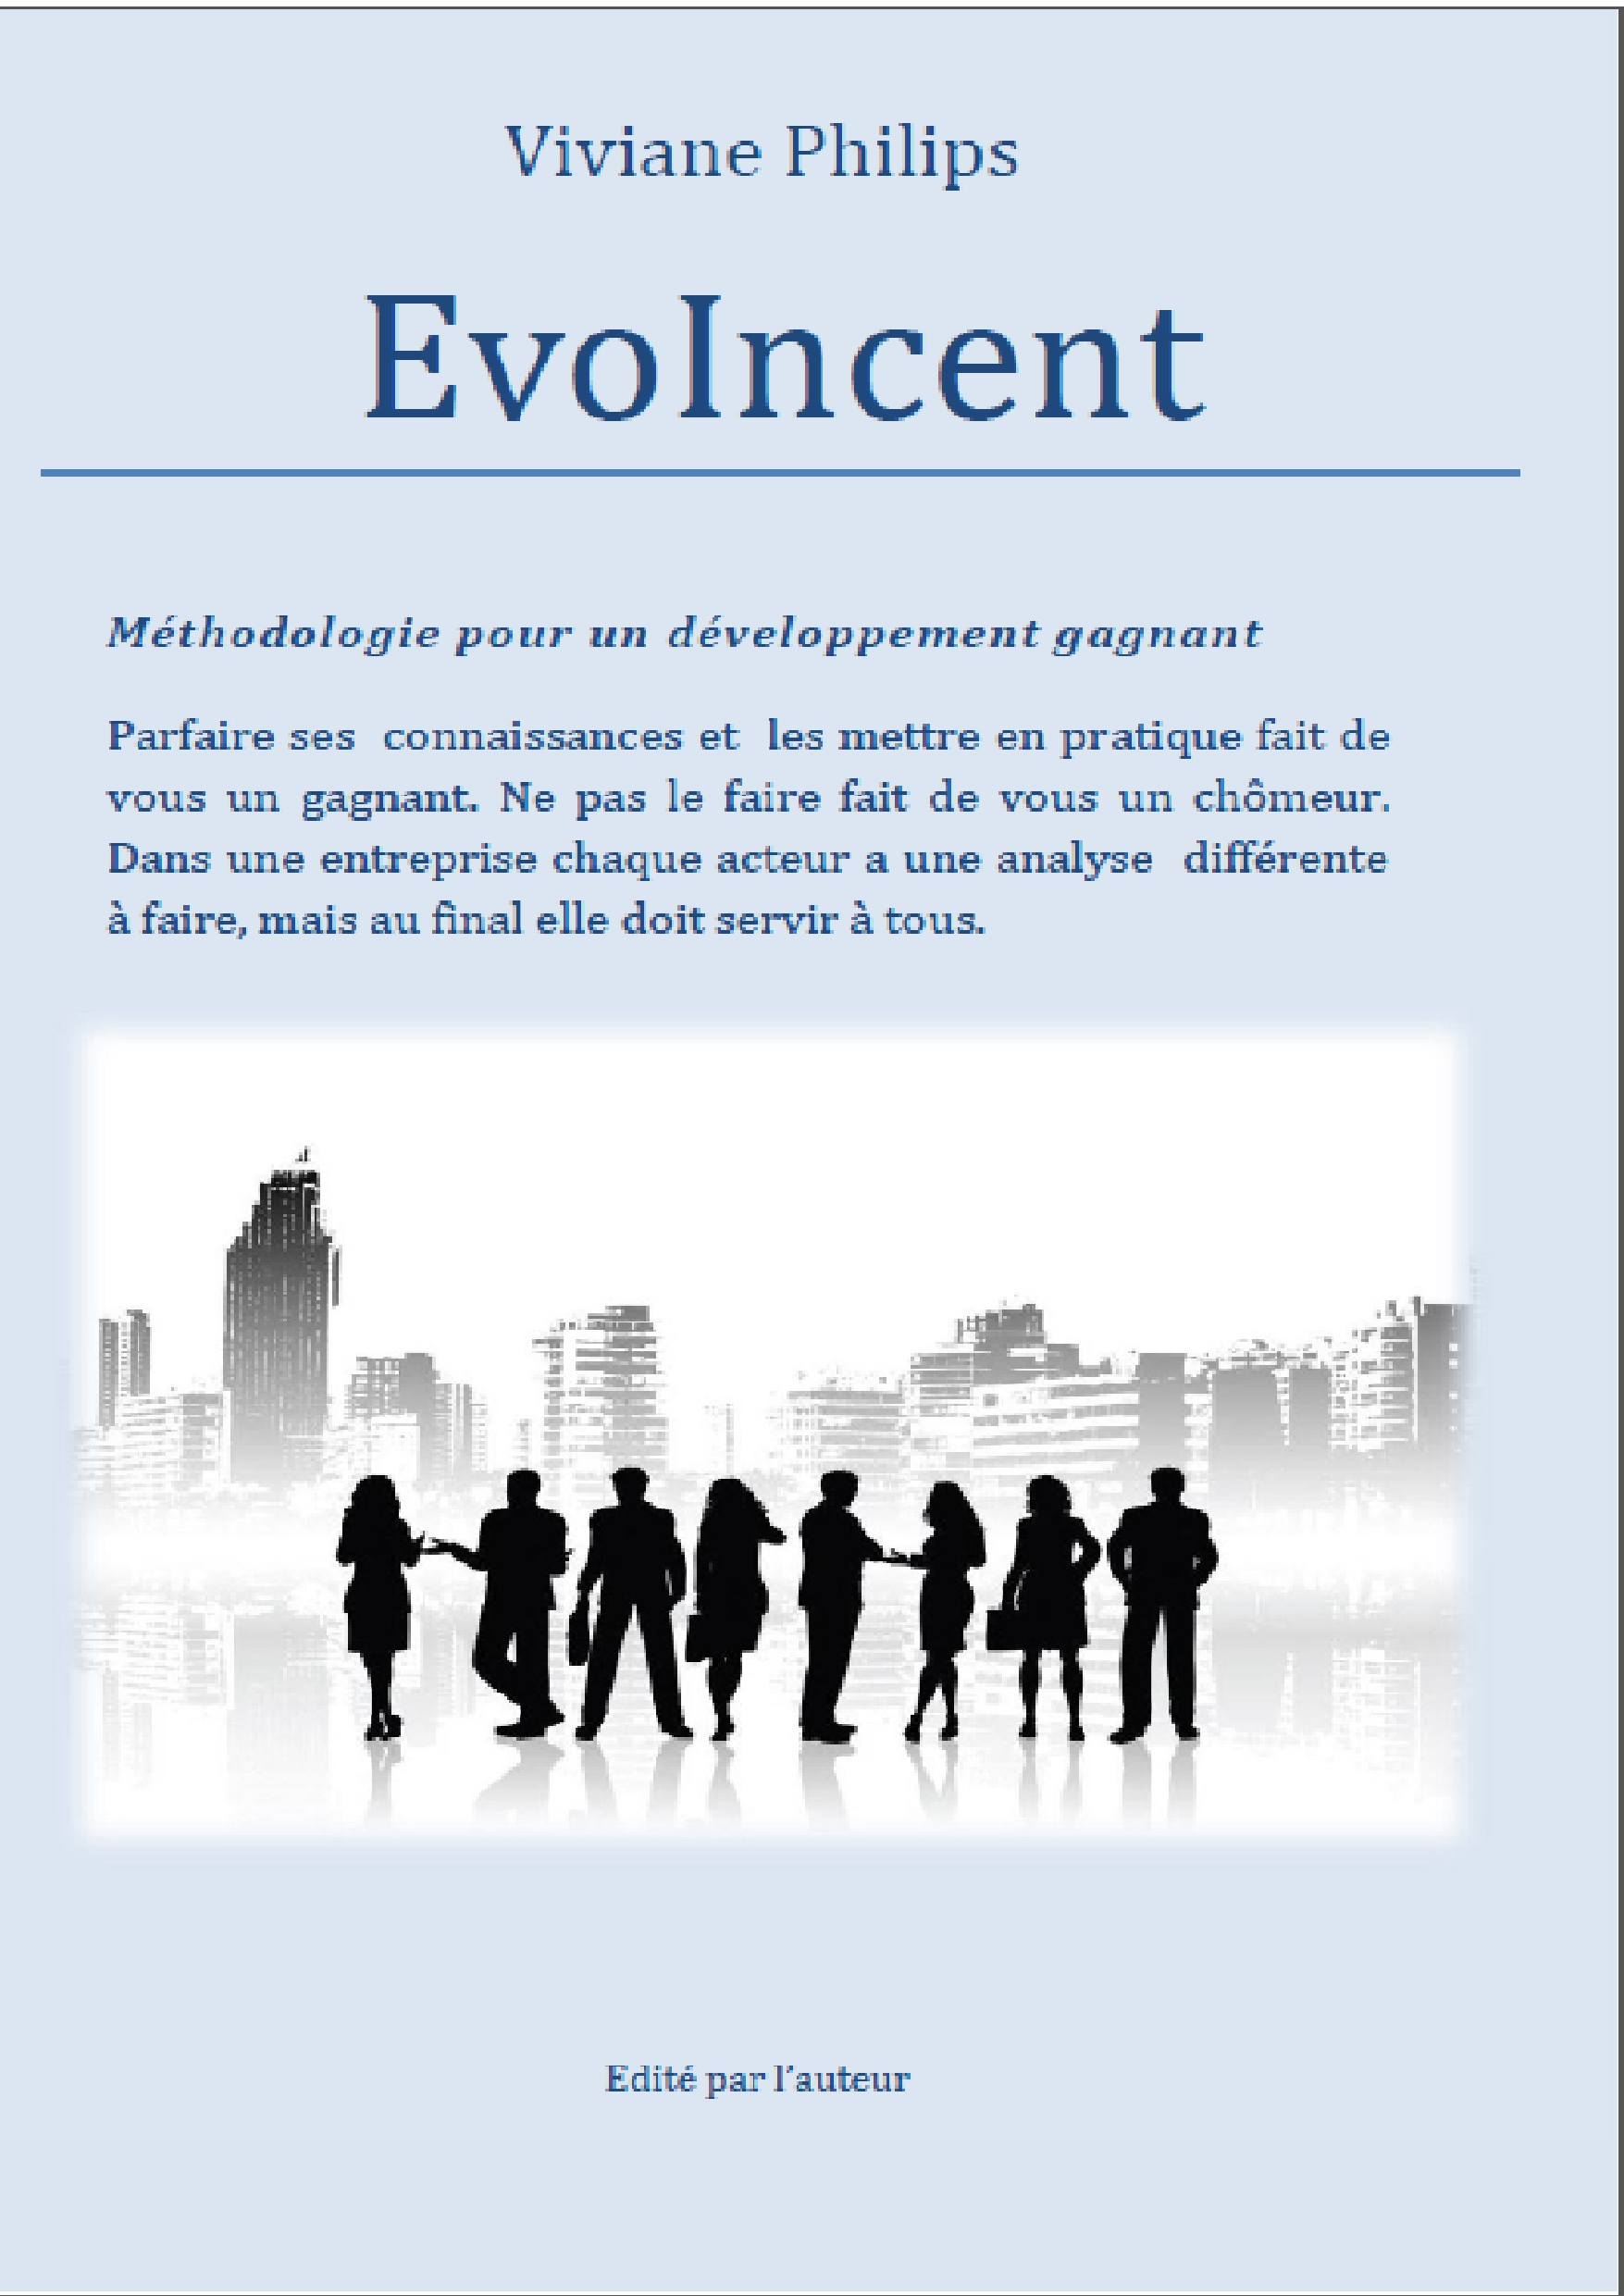 EvoIncent (Evolution & Incentive)